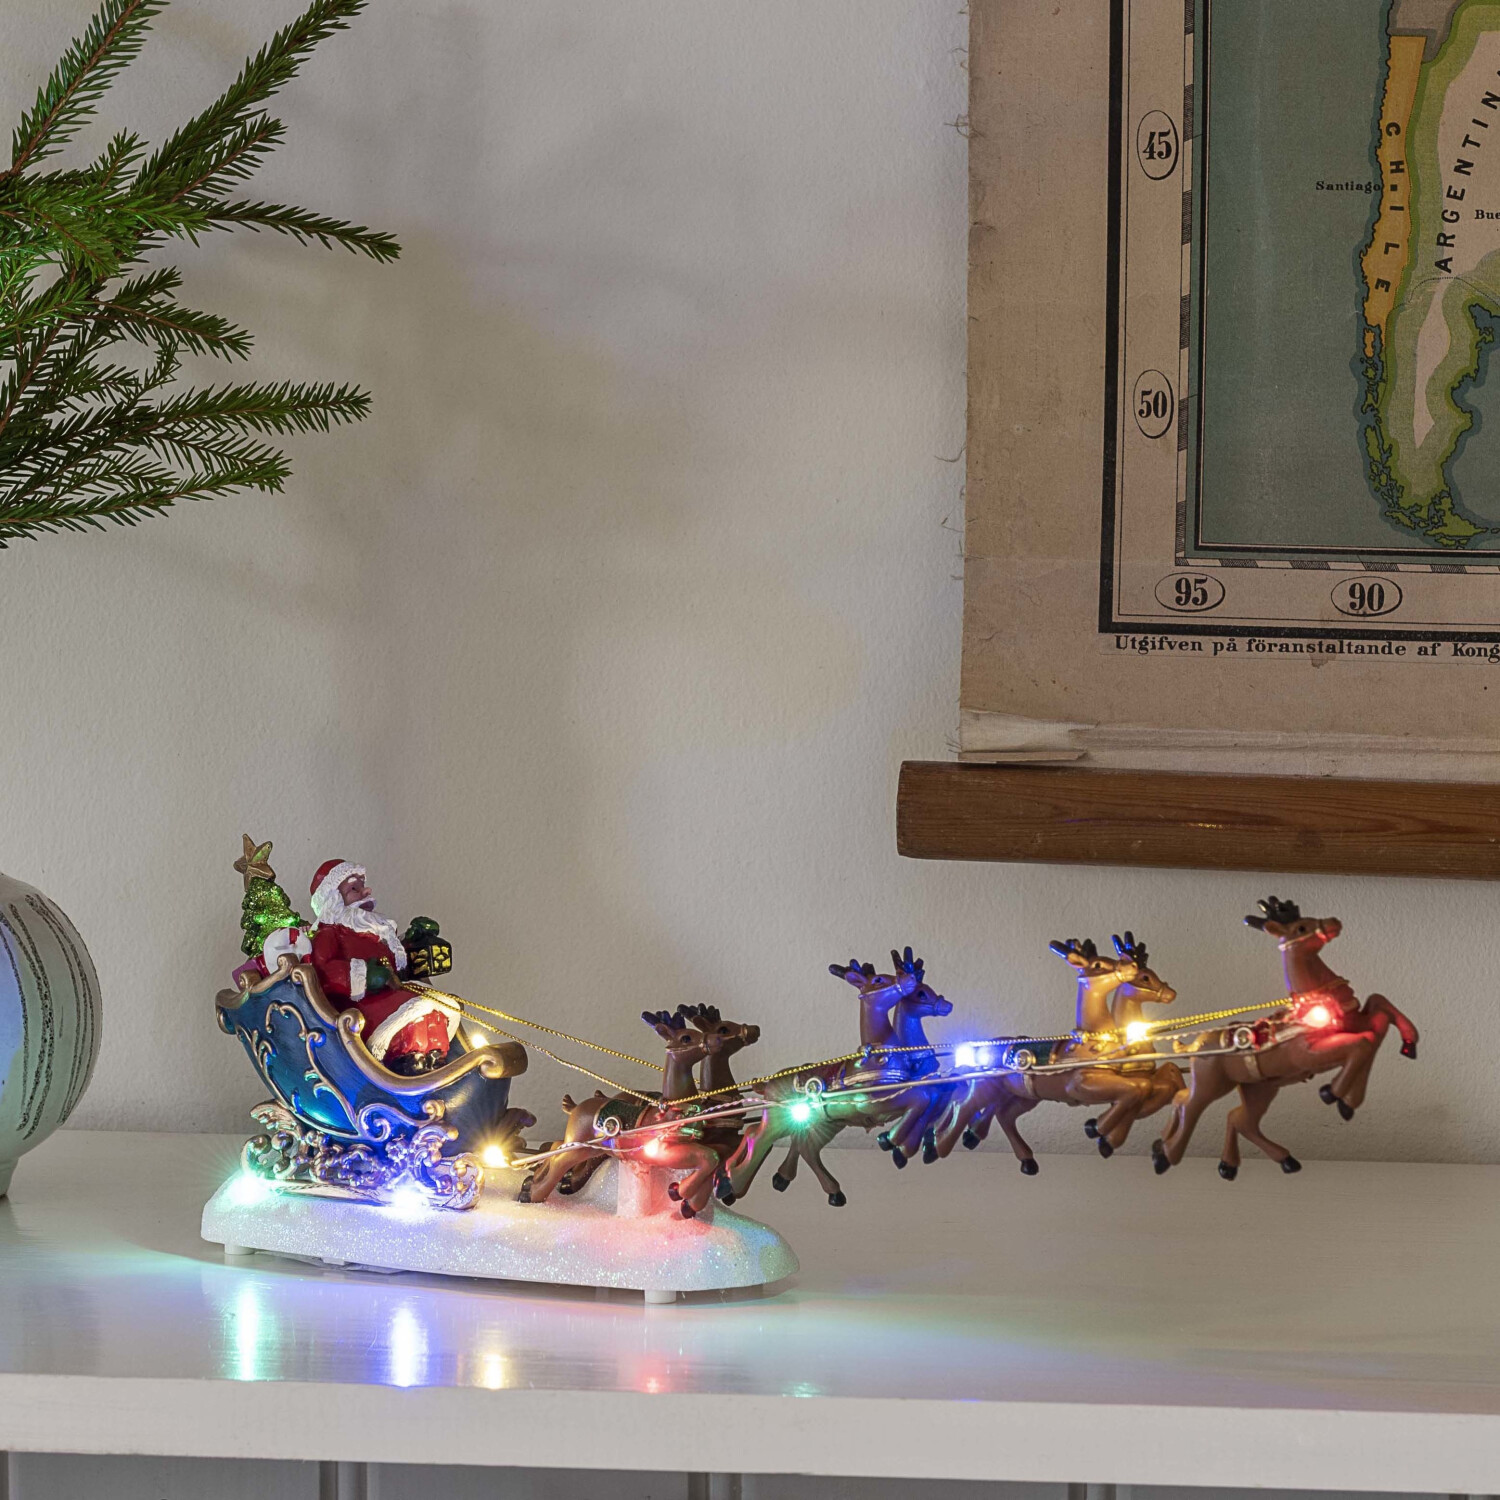 Konstsmide LED-Szenerie Weihnachtsmann Preisvergleich Schlitten (4205-000) bei mit | 21,40 ab €